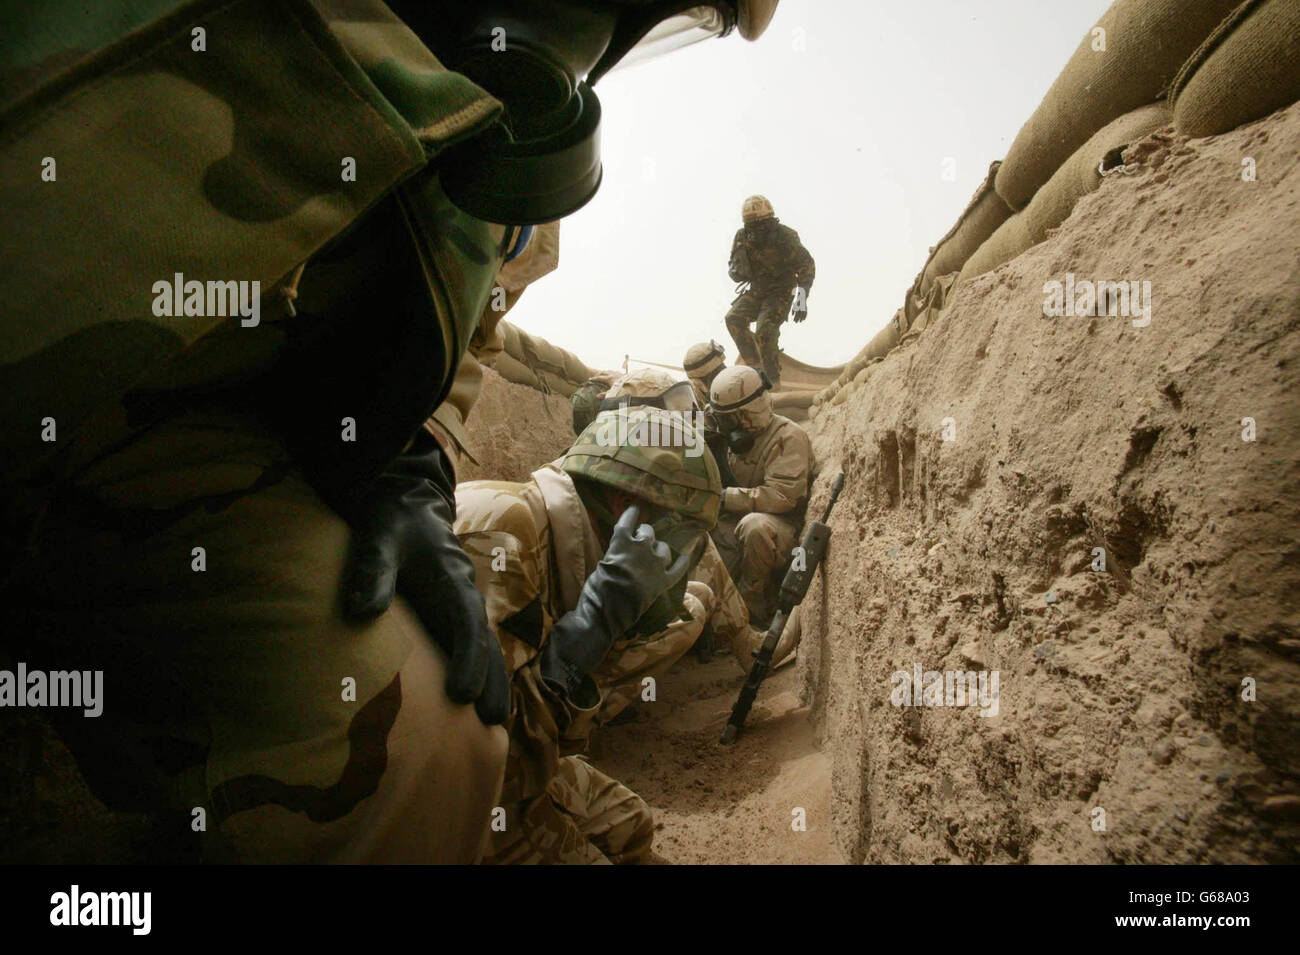 Amerikanische und britische Truppen nehmen während eines unbestätigten irakischen Raketenangriffs in der kuwaitischen Wüste Schutz in „abgestürften Schützengräben“ ein. Der Angriff kam, nachdem amerikanische Truppen in den frühen Morgenstunden Luftangriffe auf den Irak gestartet hatten. Foto von Dan Chung, The Guardian, MOD Pool Stockfoto